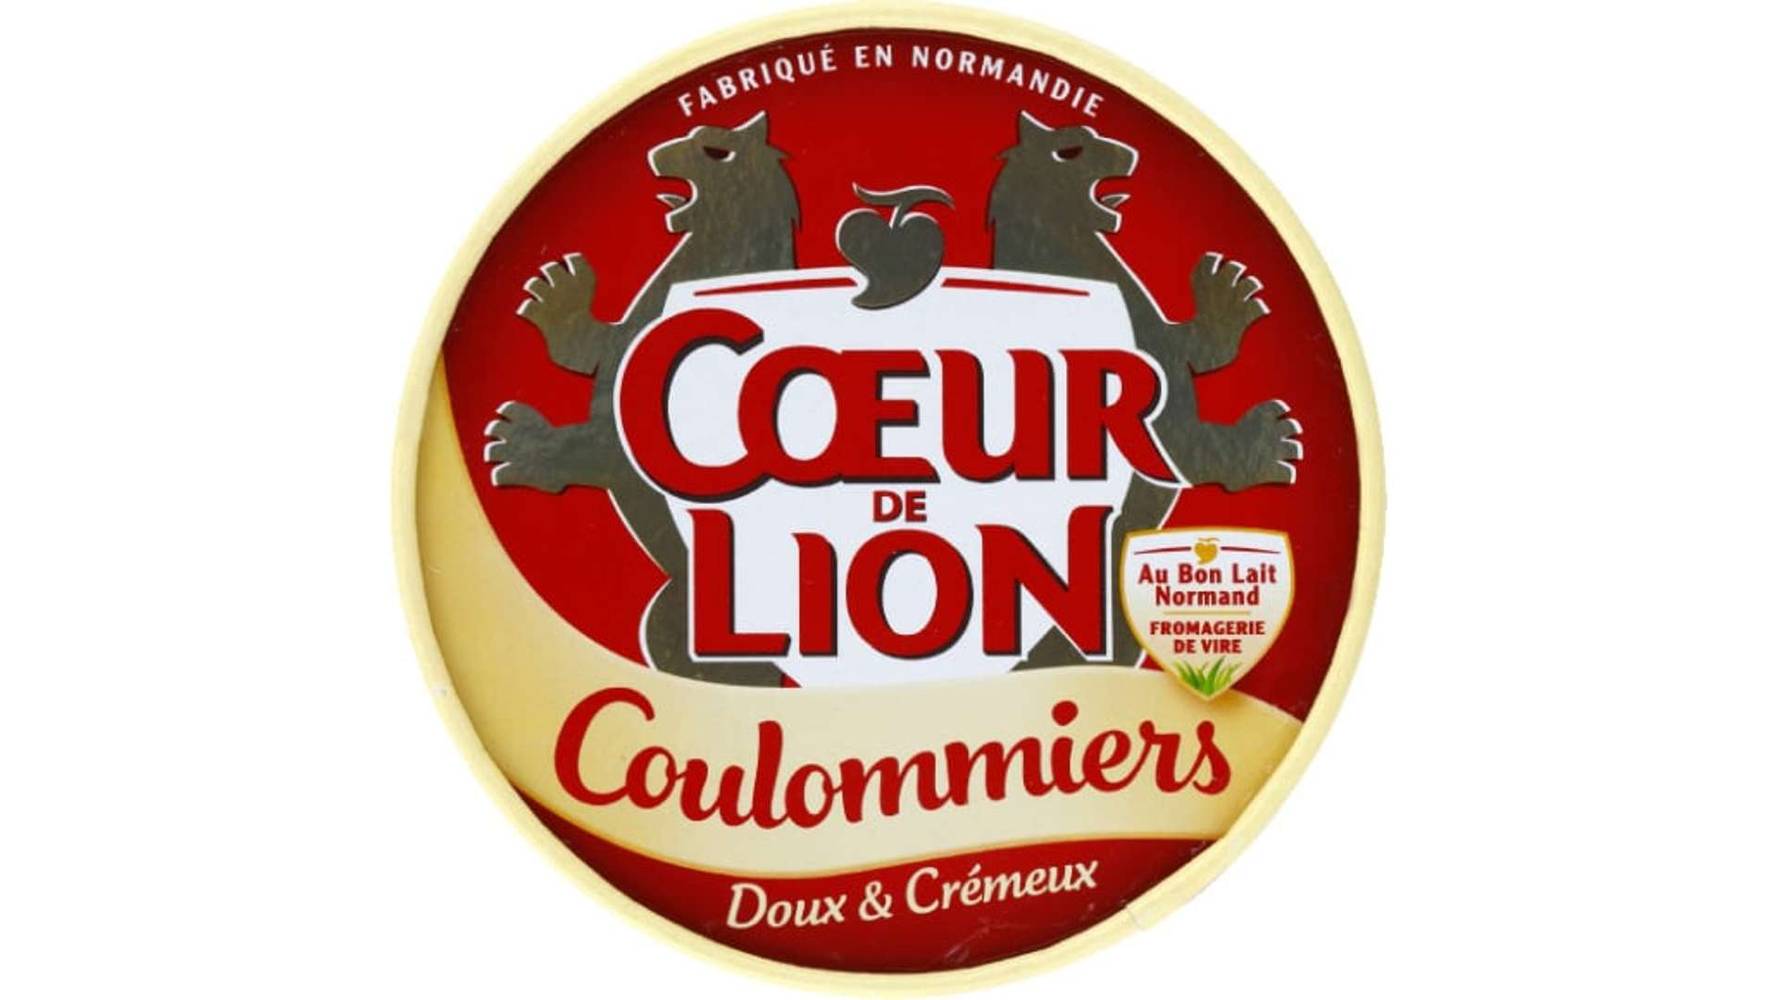 Coeur de Lion - Coulommiers doux et crémeux